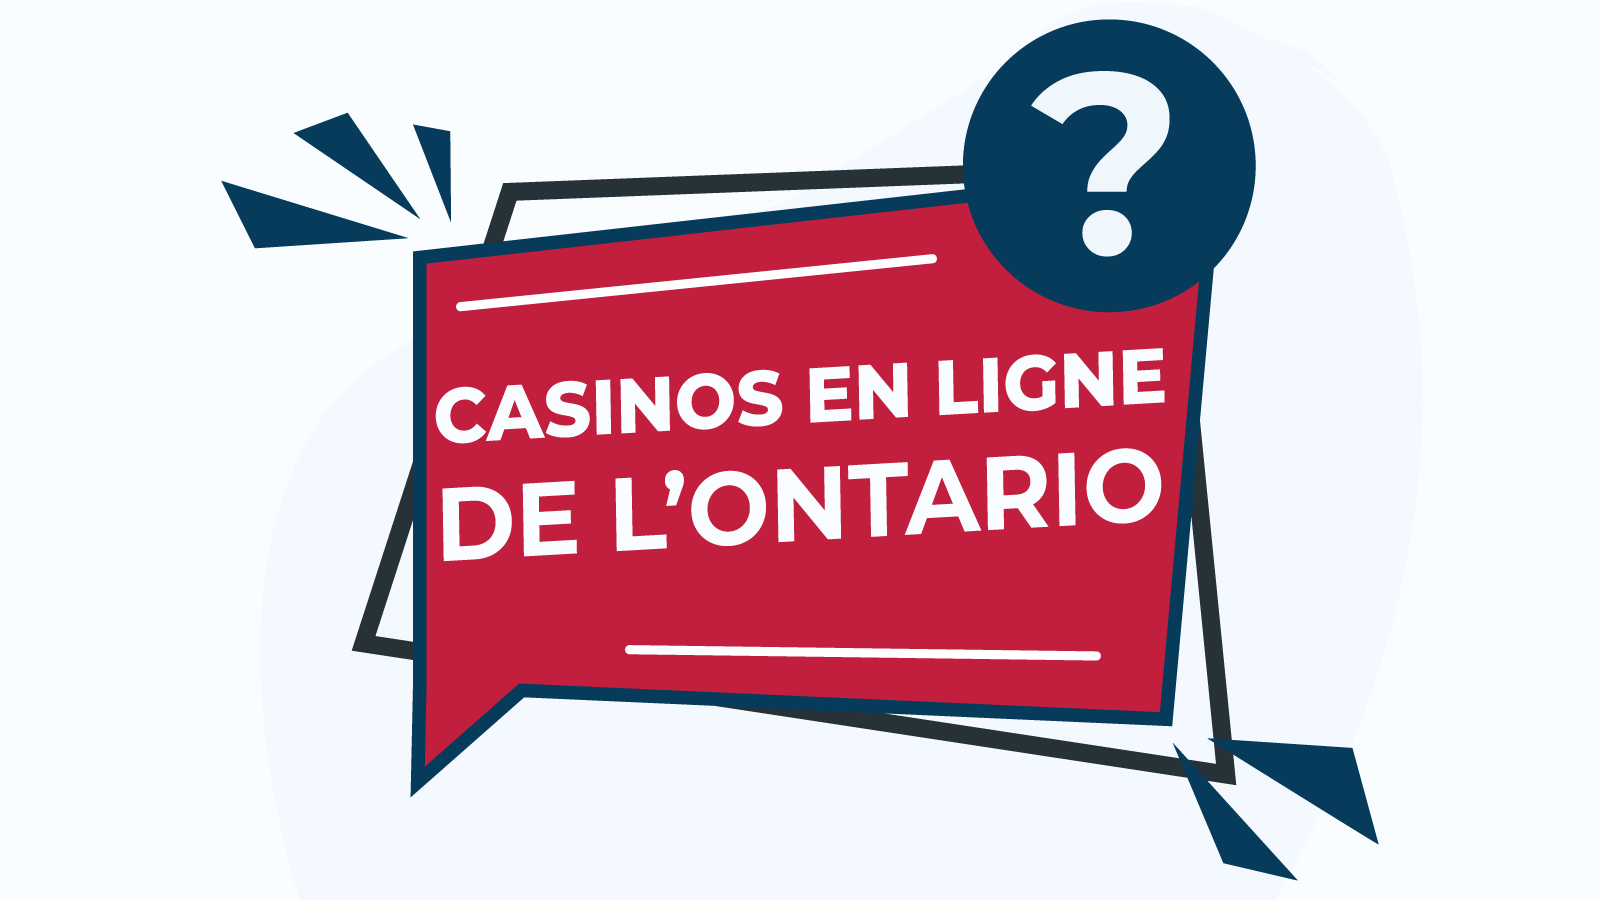 Ce qu’il faut savoir sur les casinos en ligne de l’Ontario